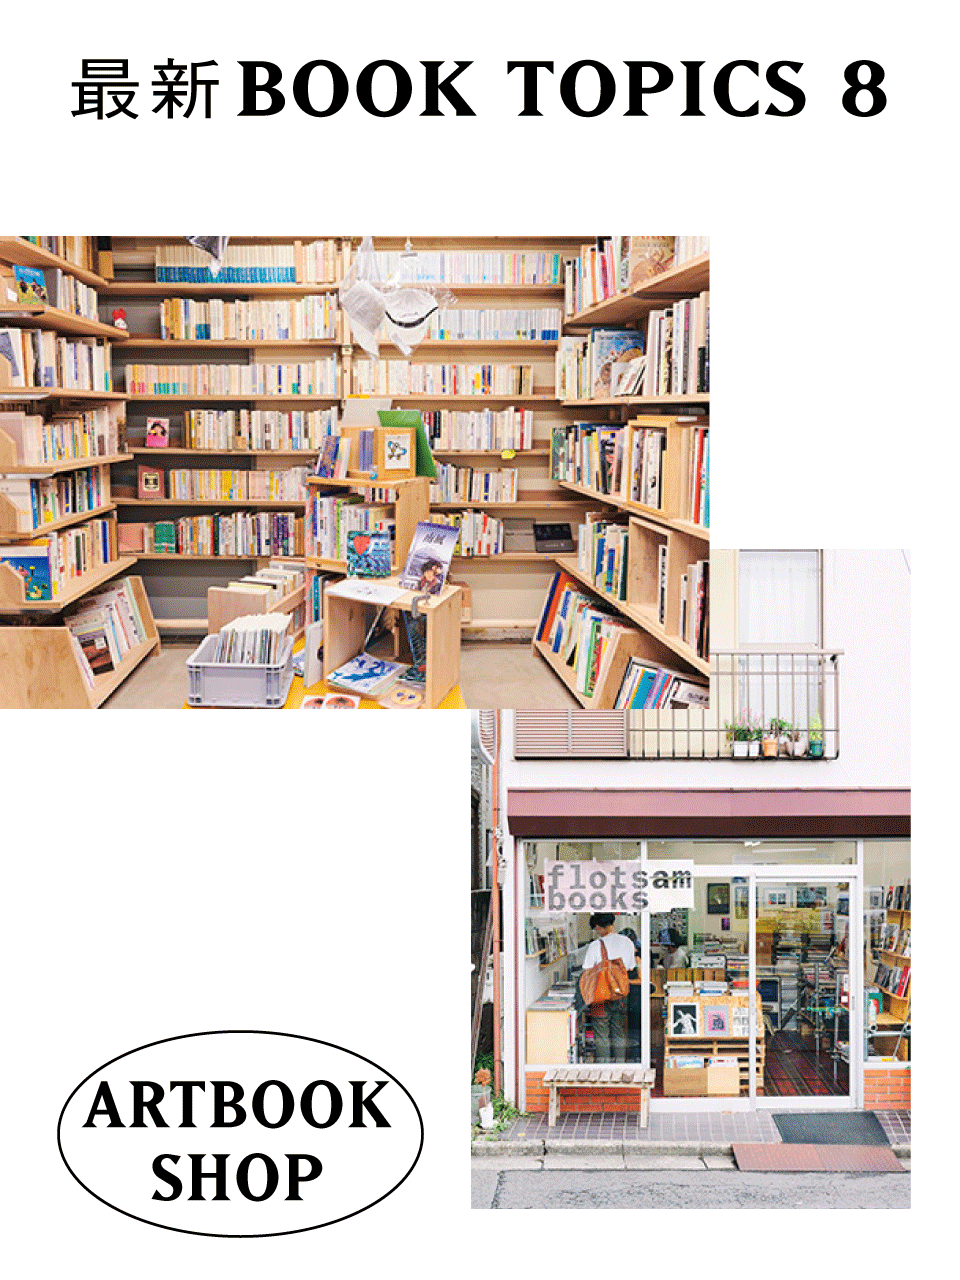 ラッパーのバイブル本、アートブックショップ、初心者向けの「文楽」。今知っておきたい、ブックトピックス vol.2